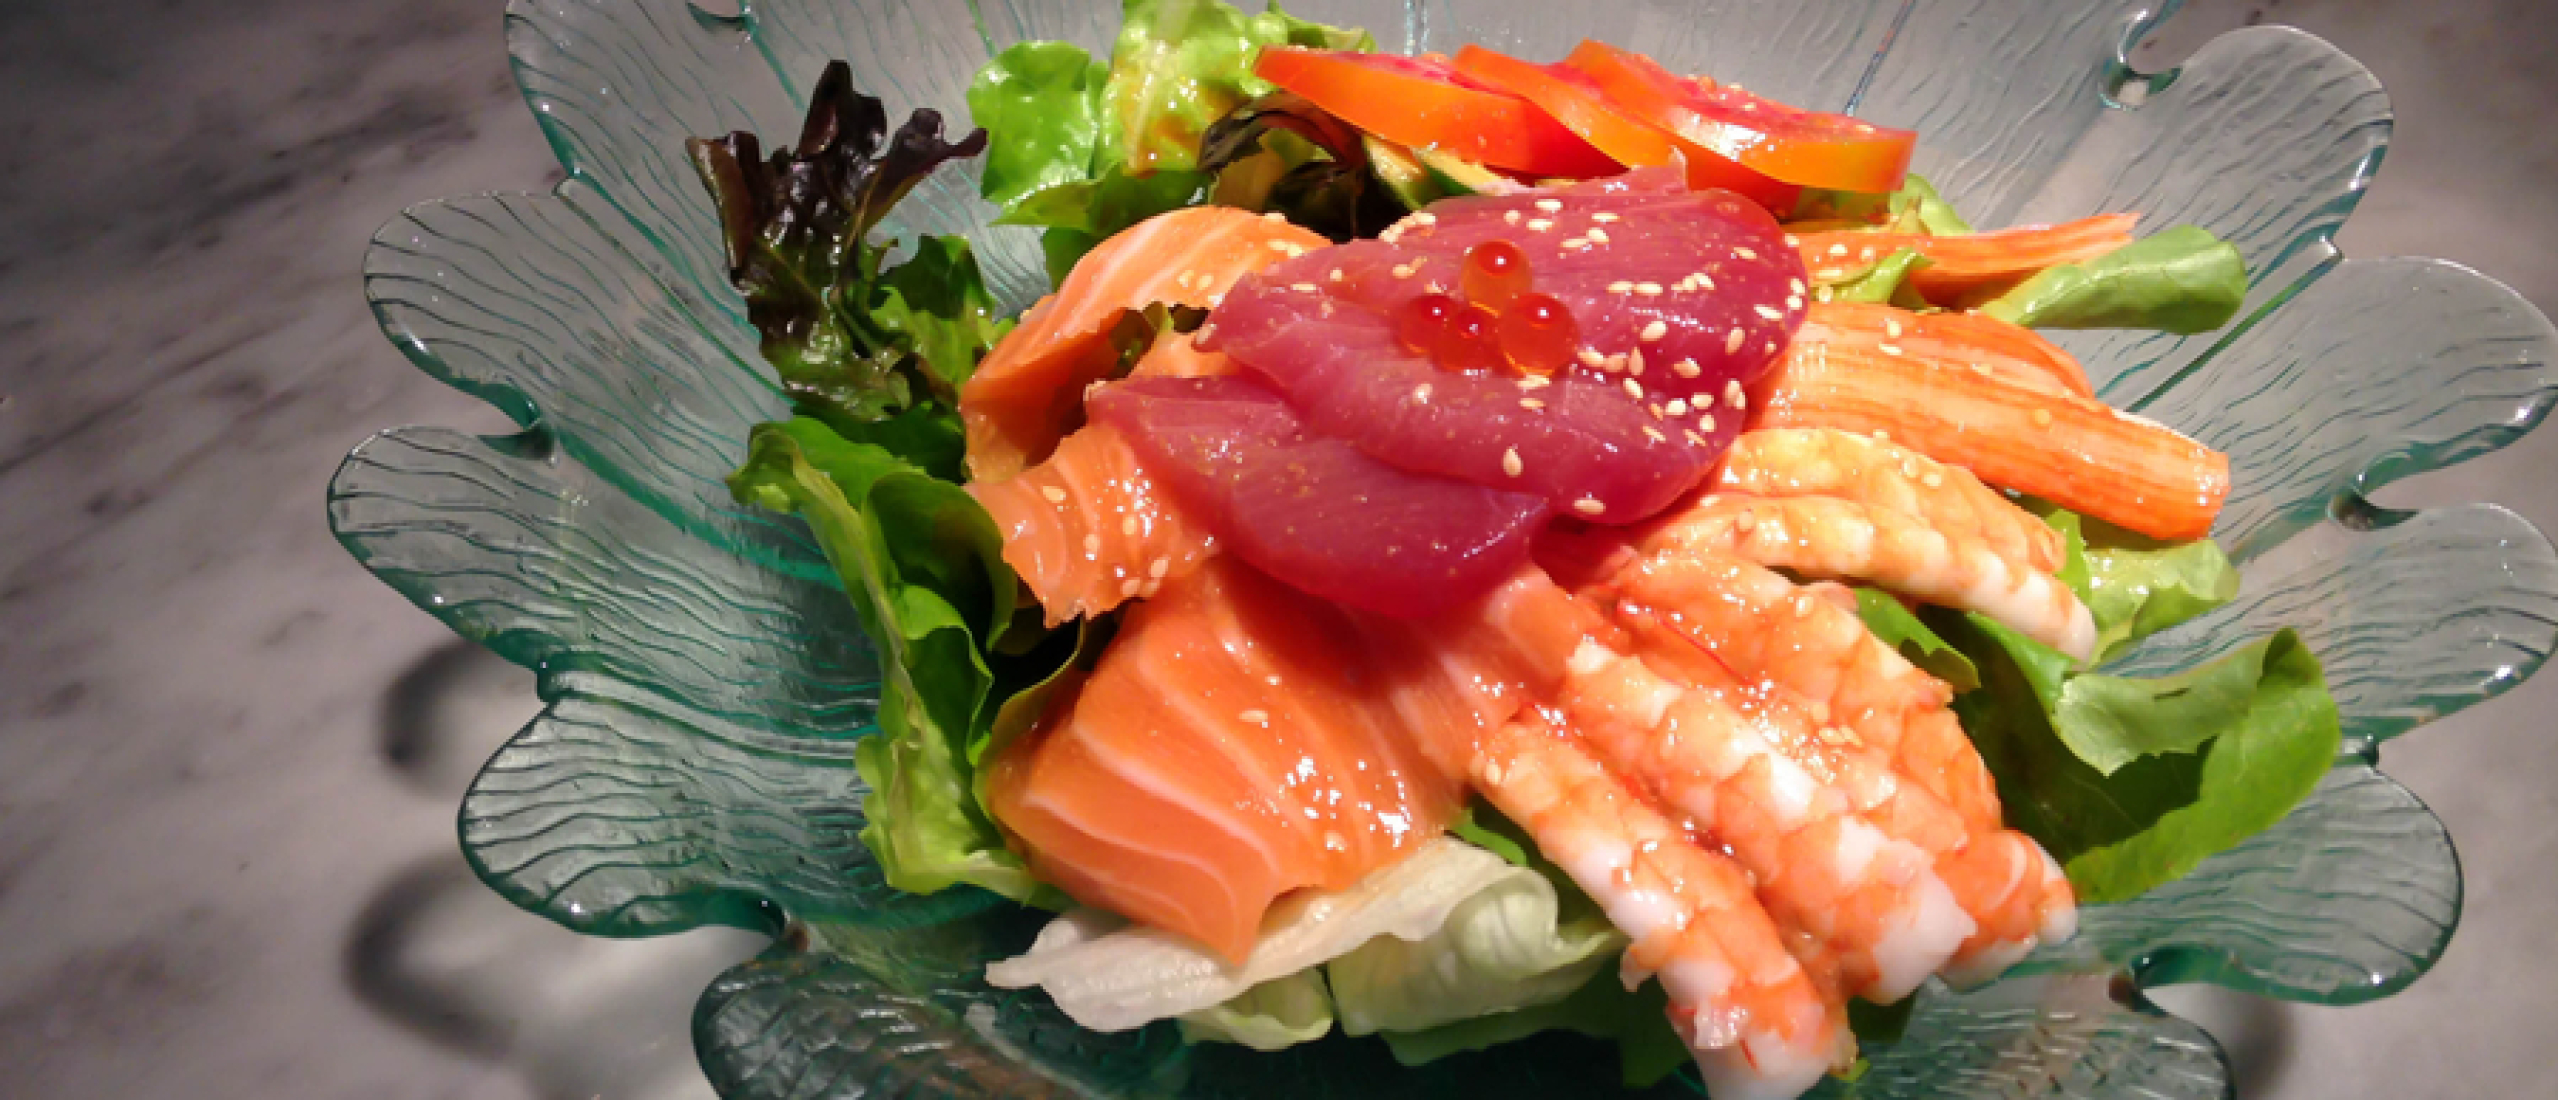 recept voor sushi salade